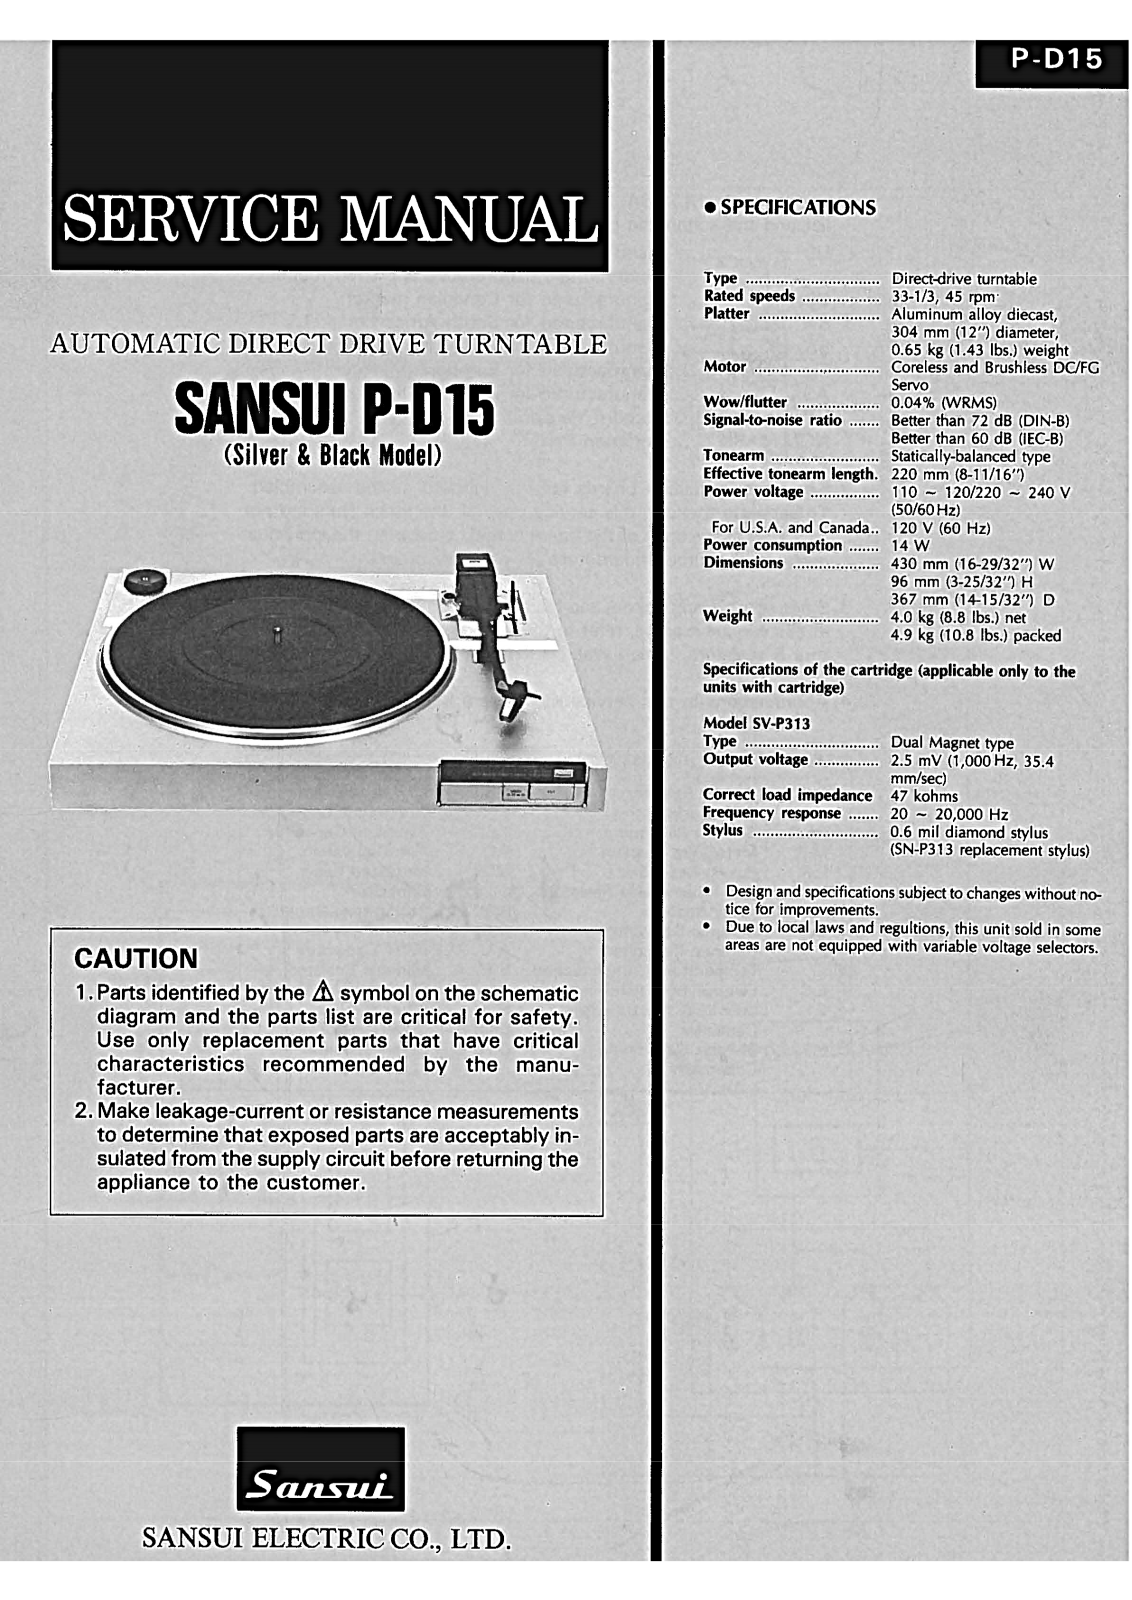 Sansui P-D15 Service Manual